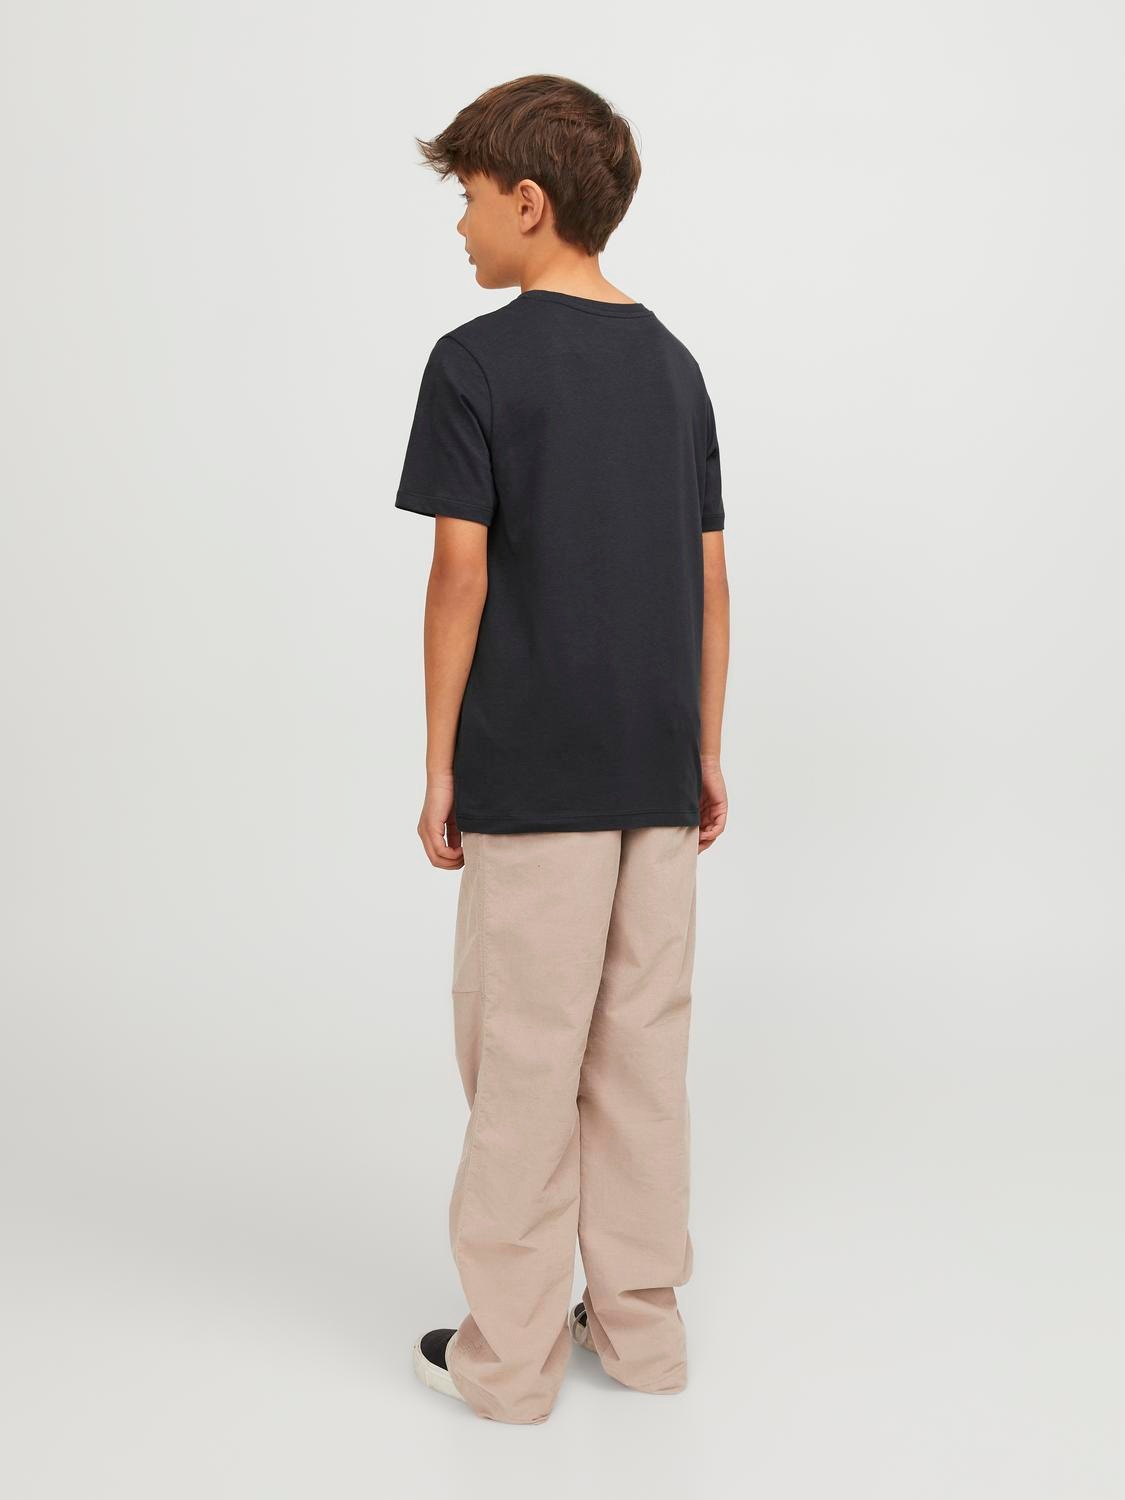 Jack & Jones T-shirt Estampar Para meninos -Dark Navy - 12249633